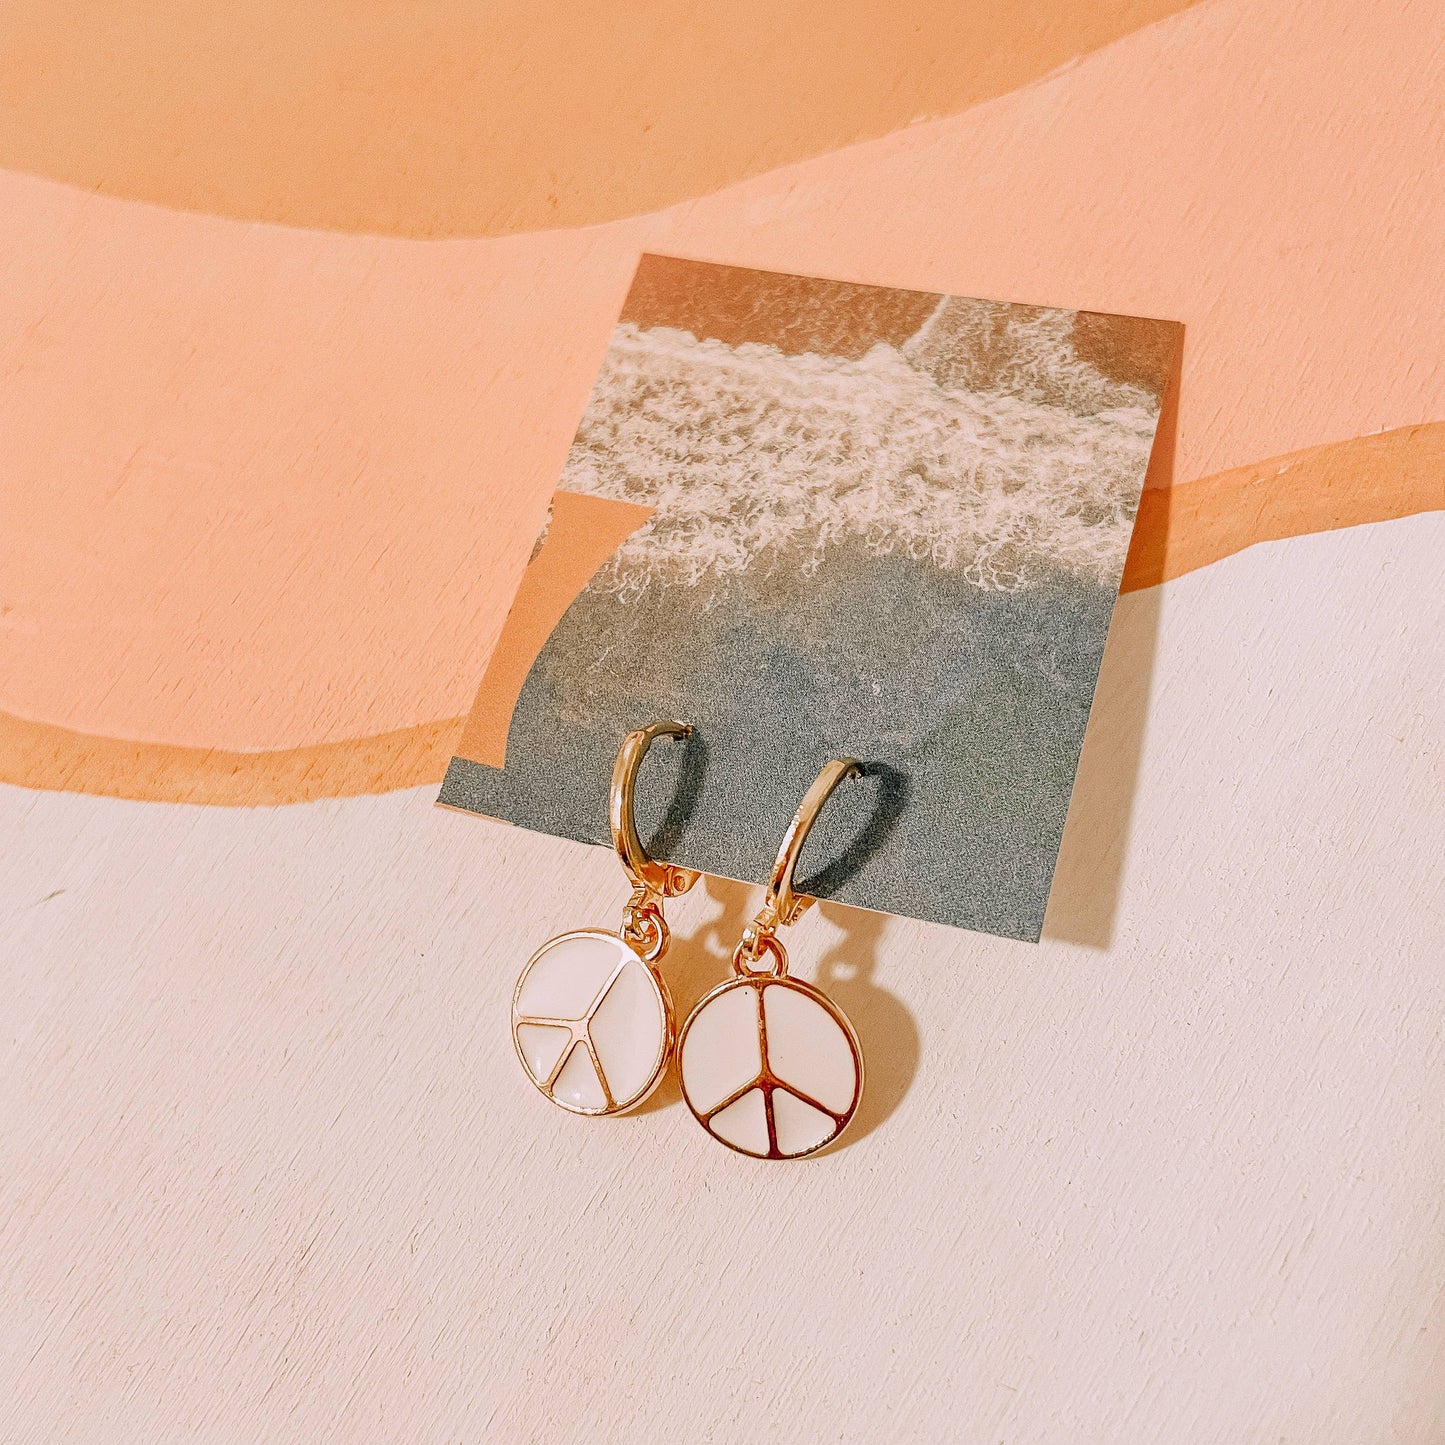 World Peace Earrings